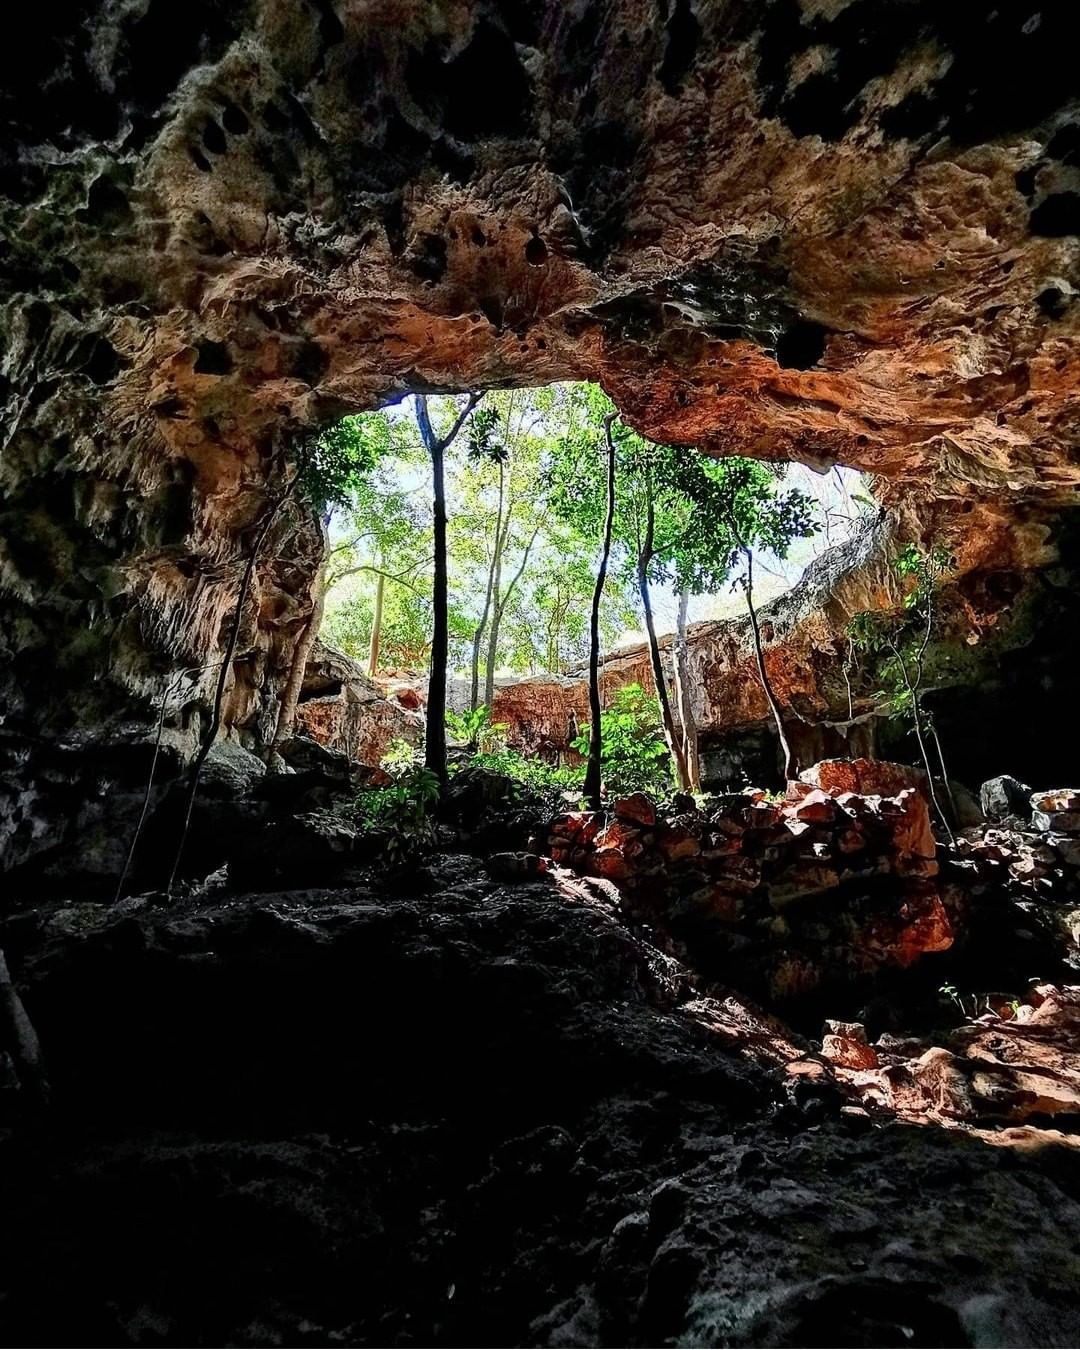 grutas de calcehtok